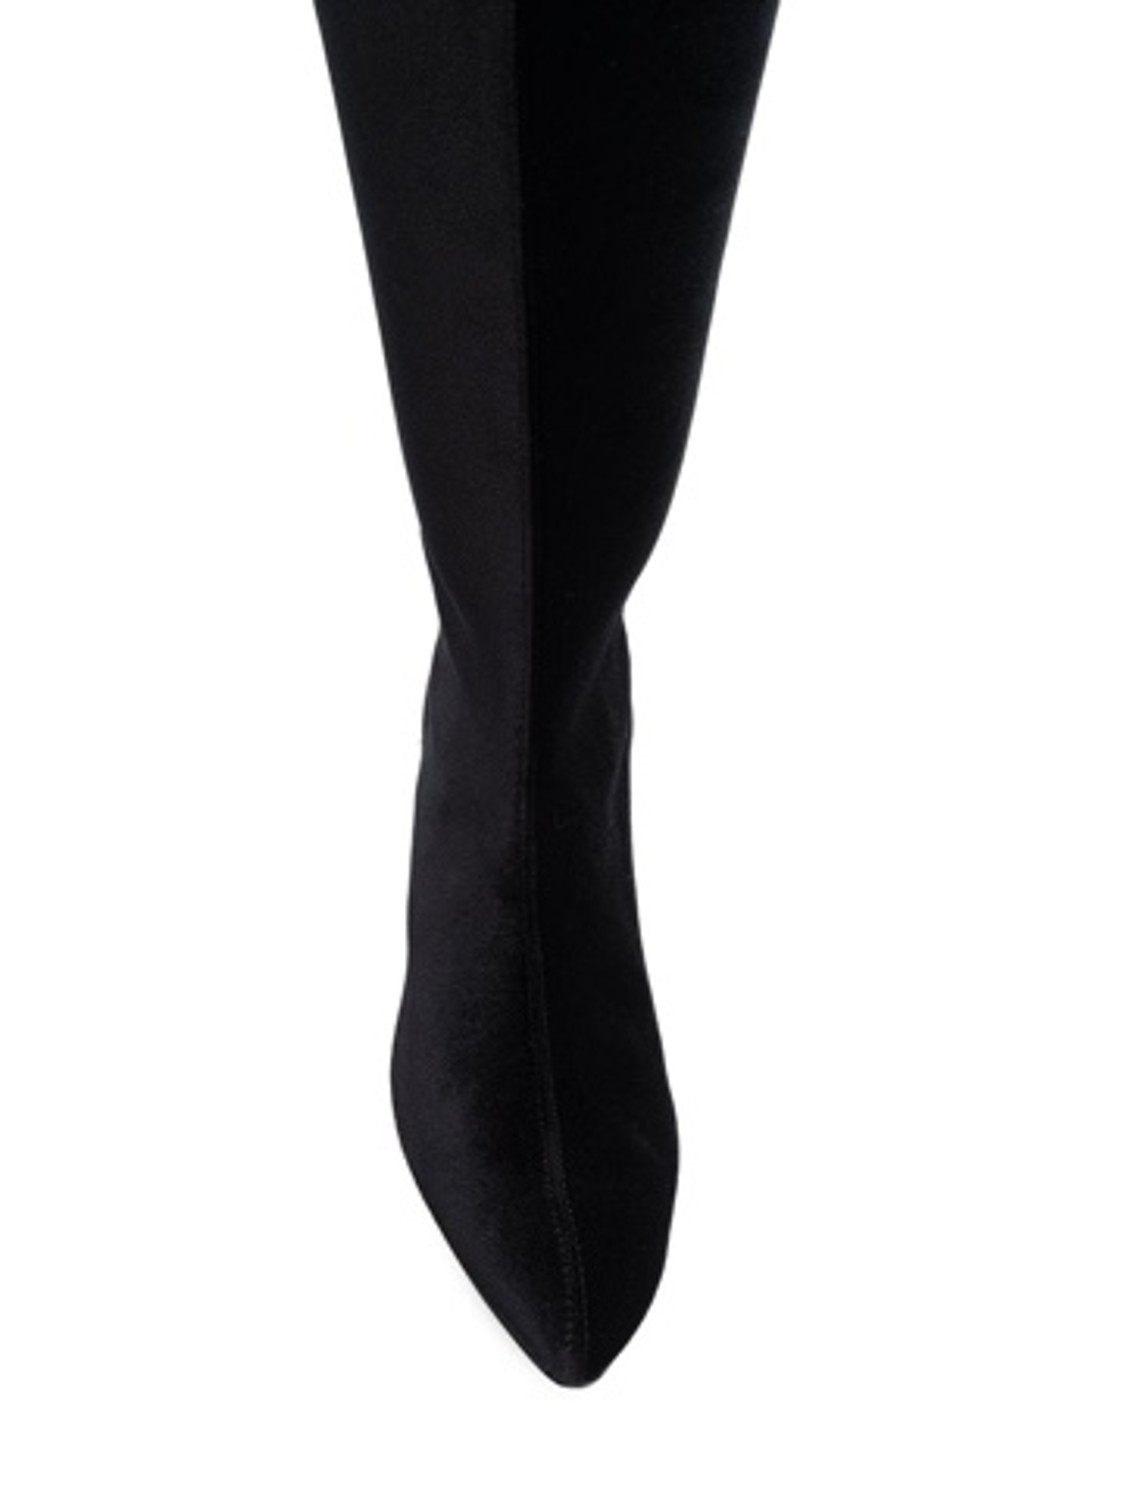 shop Gia Couture  Scarpe: Stivali Gia Couture, in tessuto tecnico, lunghezza sopra al ginocchio, tacco rosso a contrasto.

Composizione: 100% tessuto tecnico.
Tacco: 3 cm. number 1377